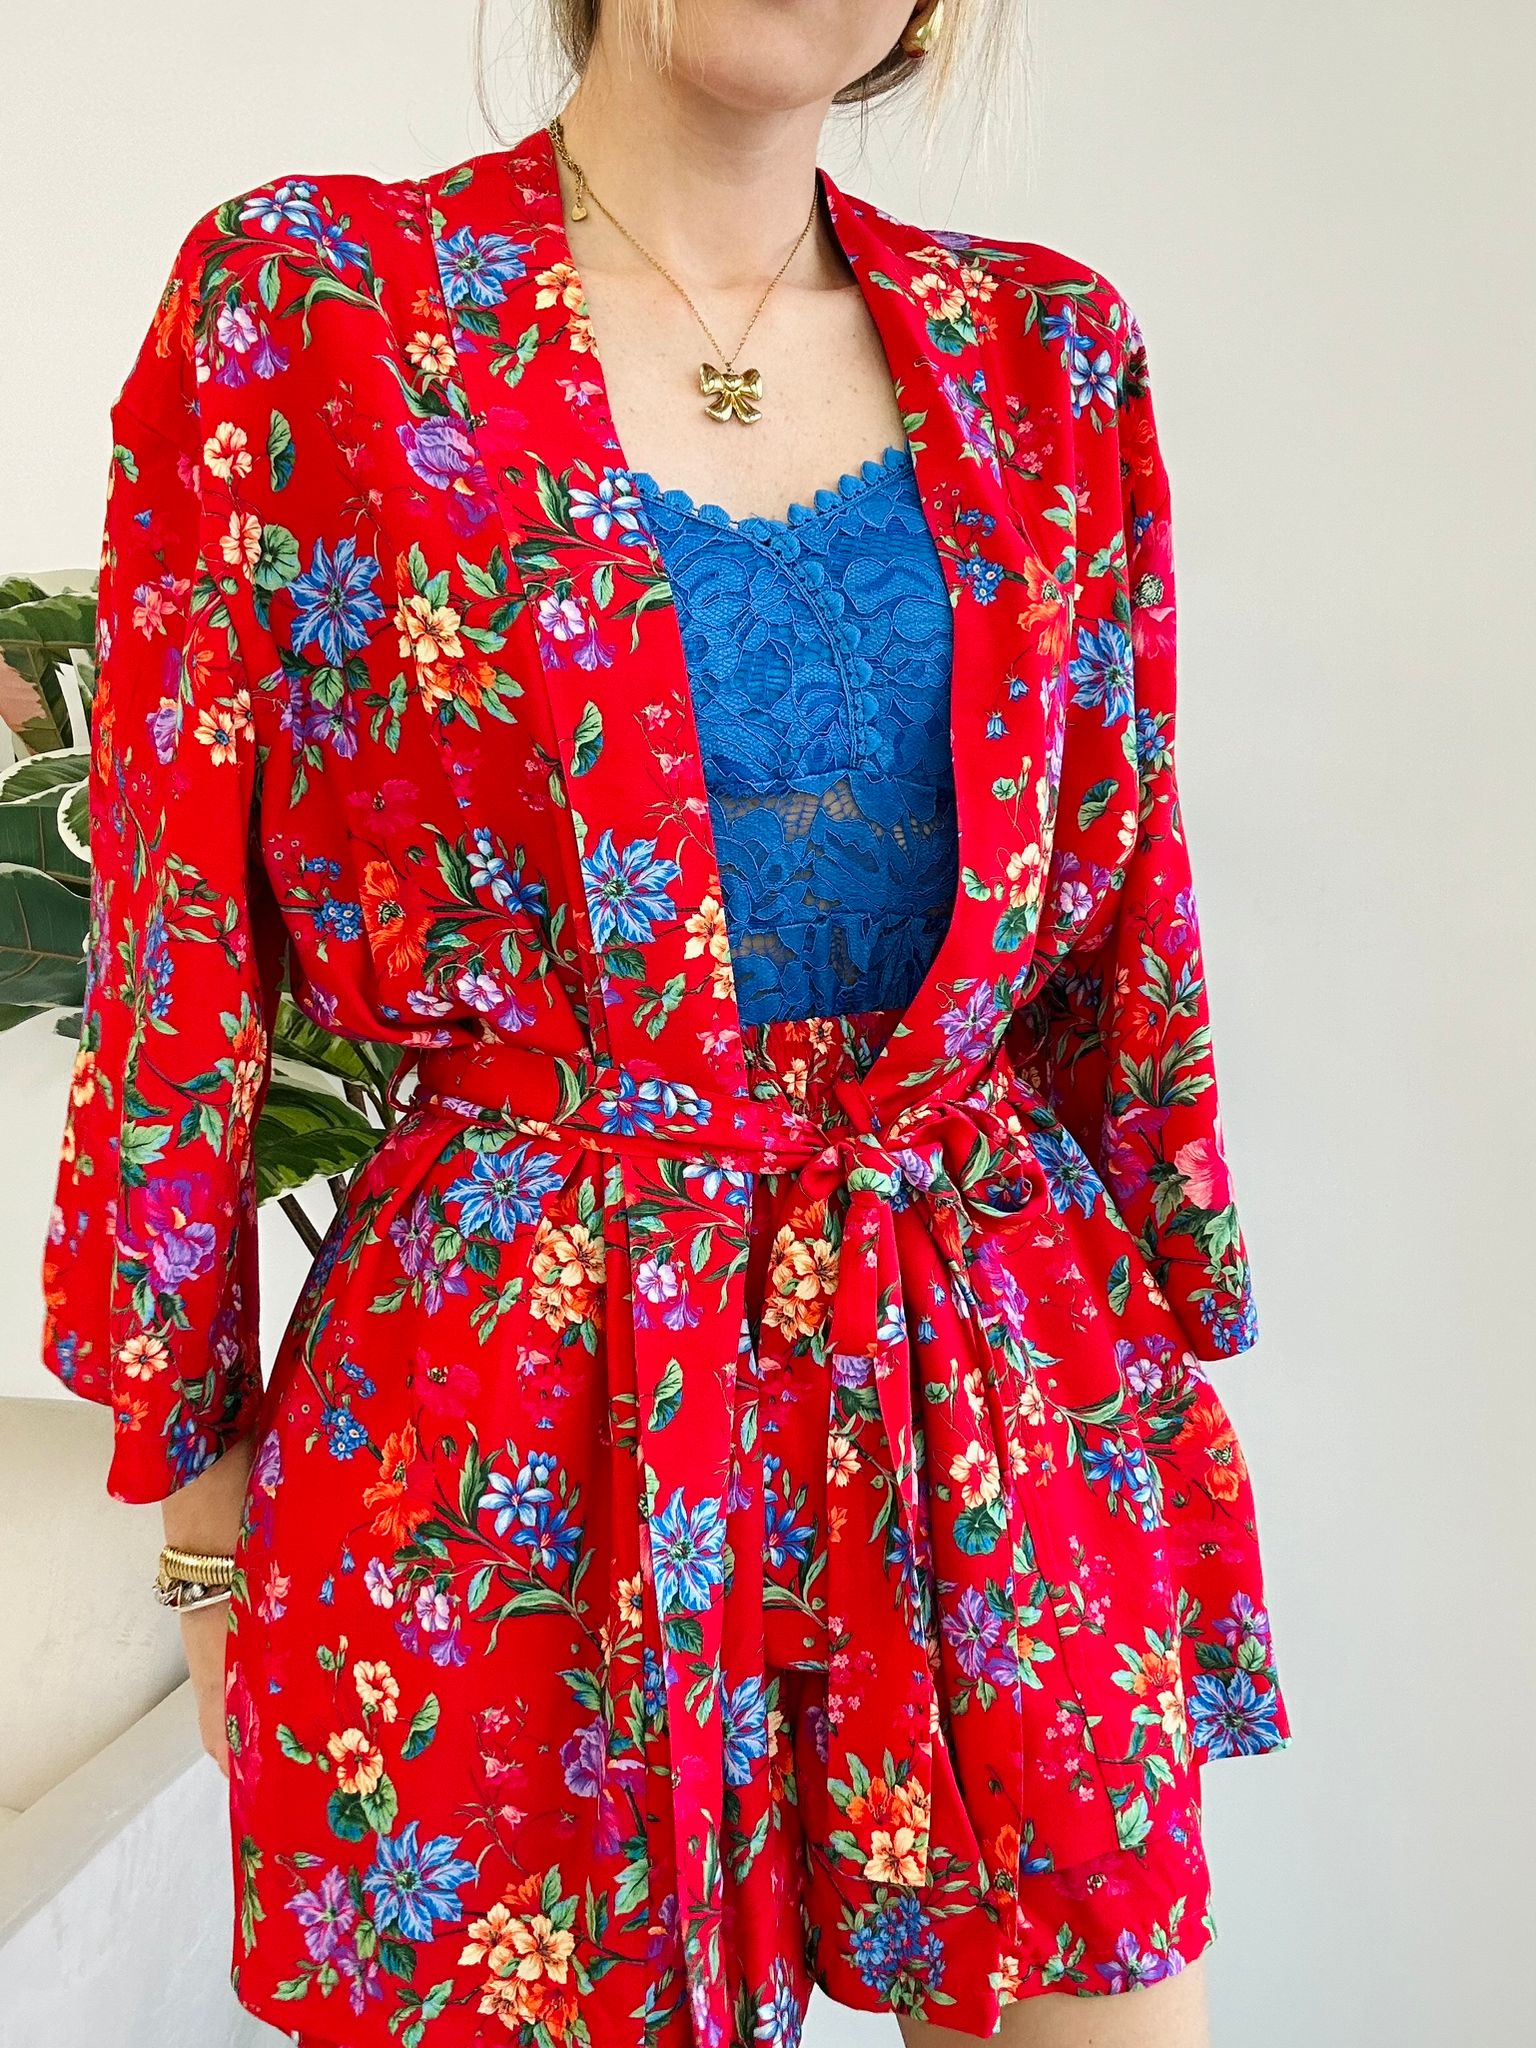 Noir coordonné (chemise kimono + short) fond rouge